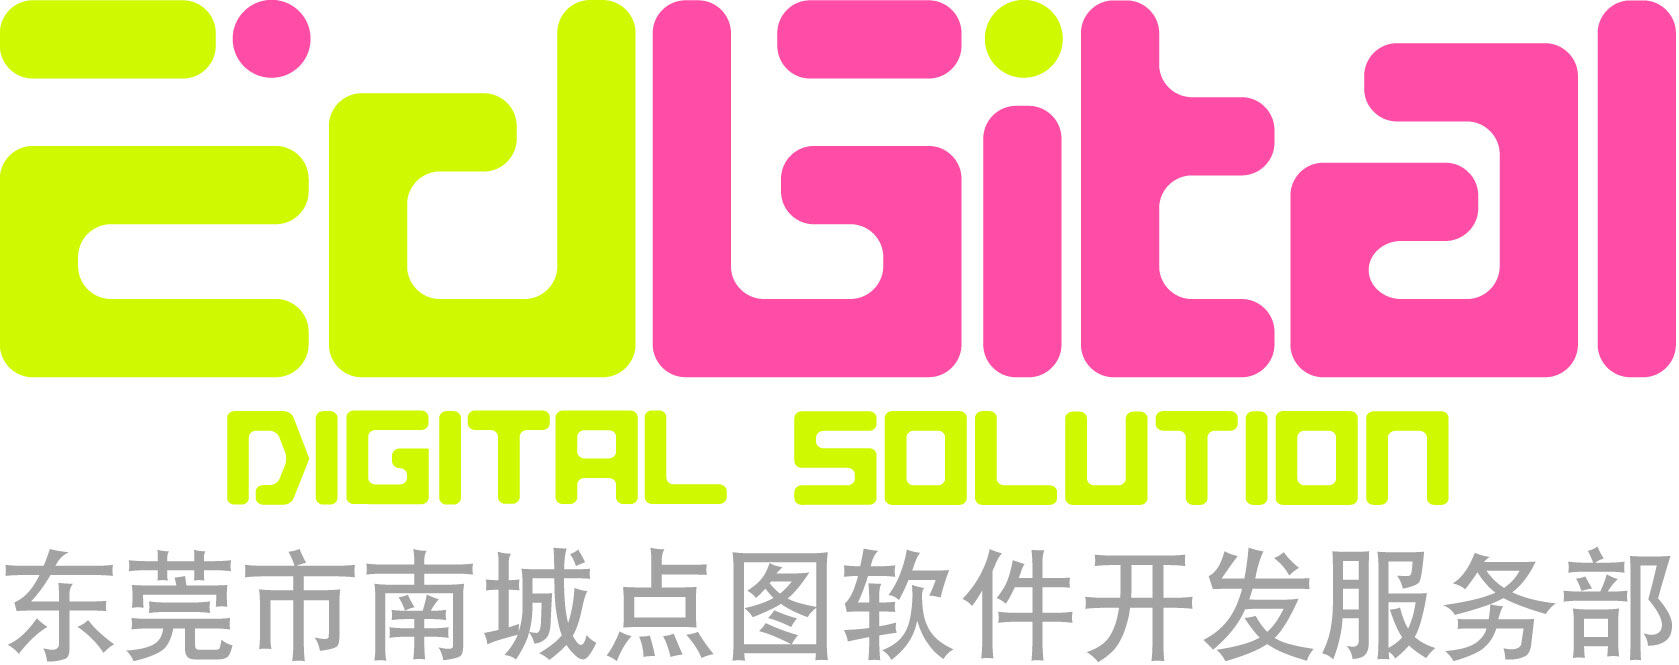 东莞市南城点图软件开发服务部logo